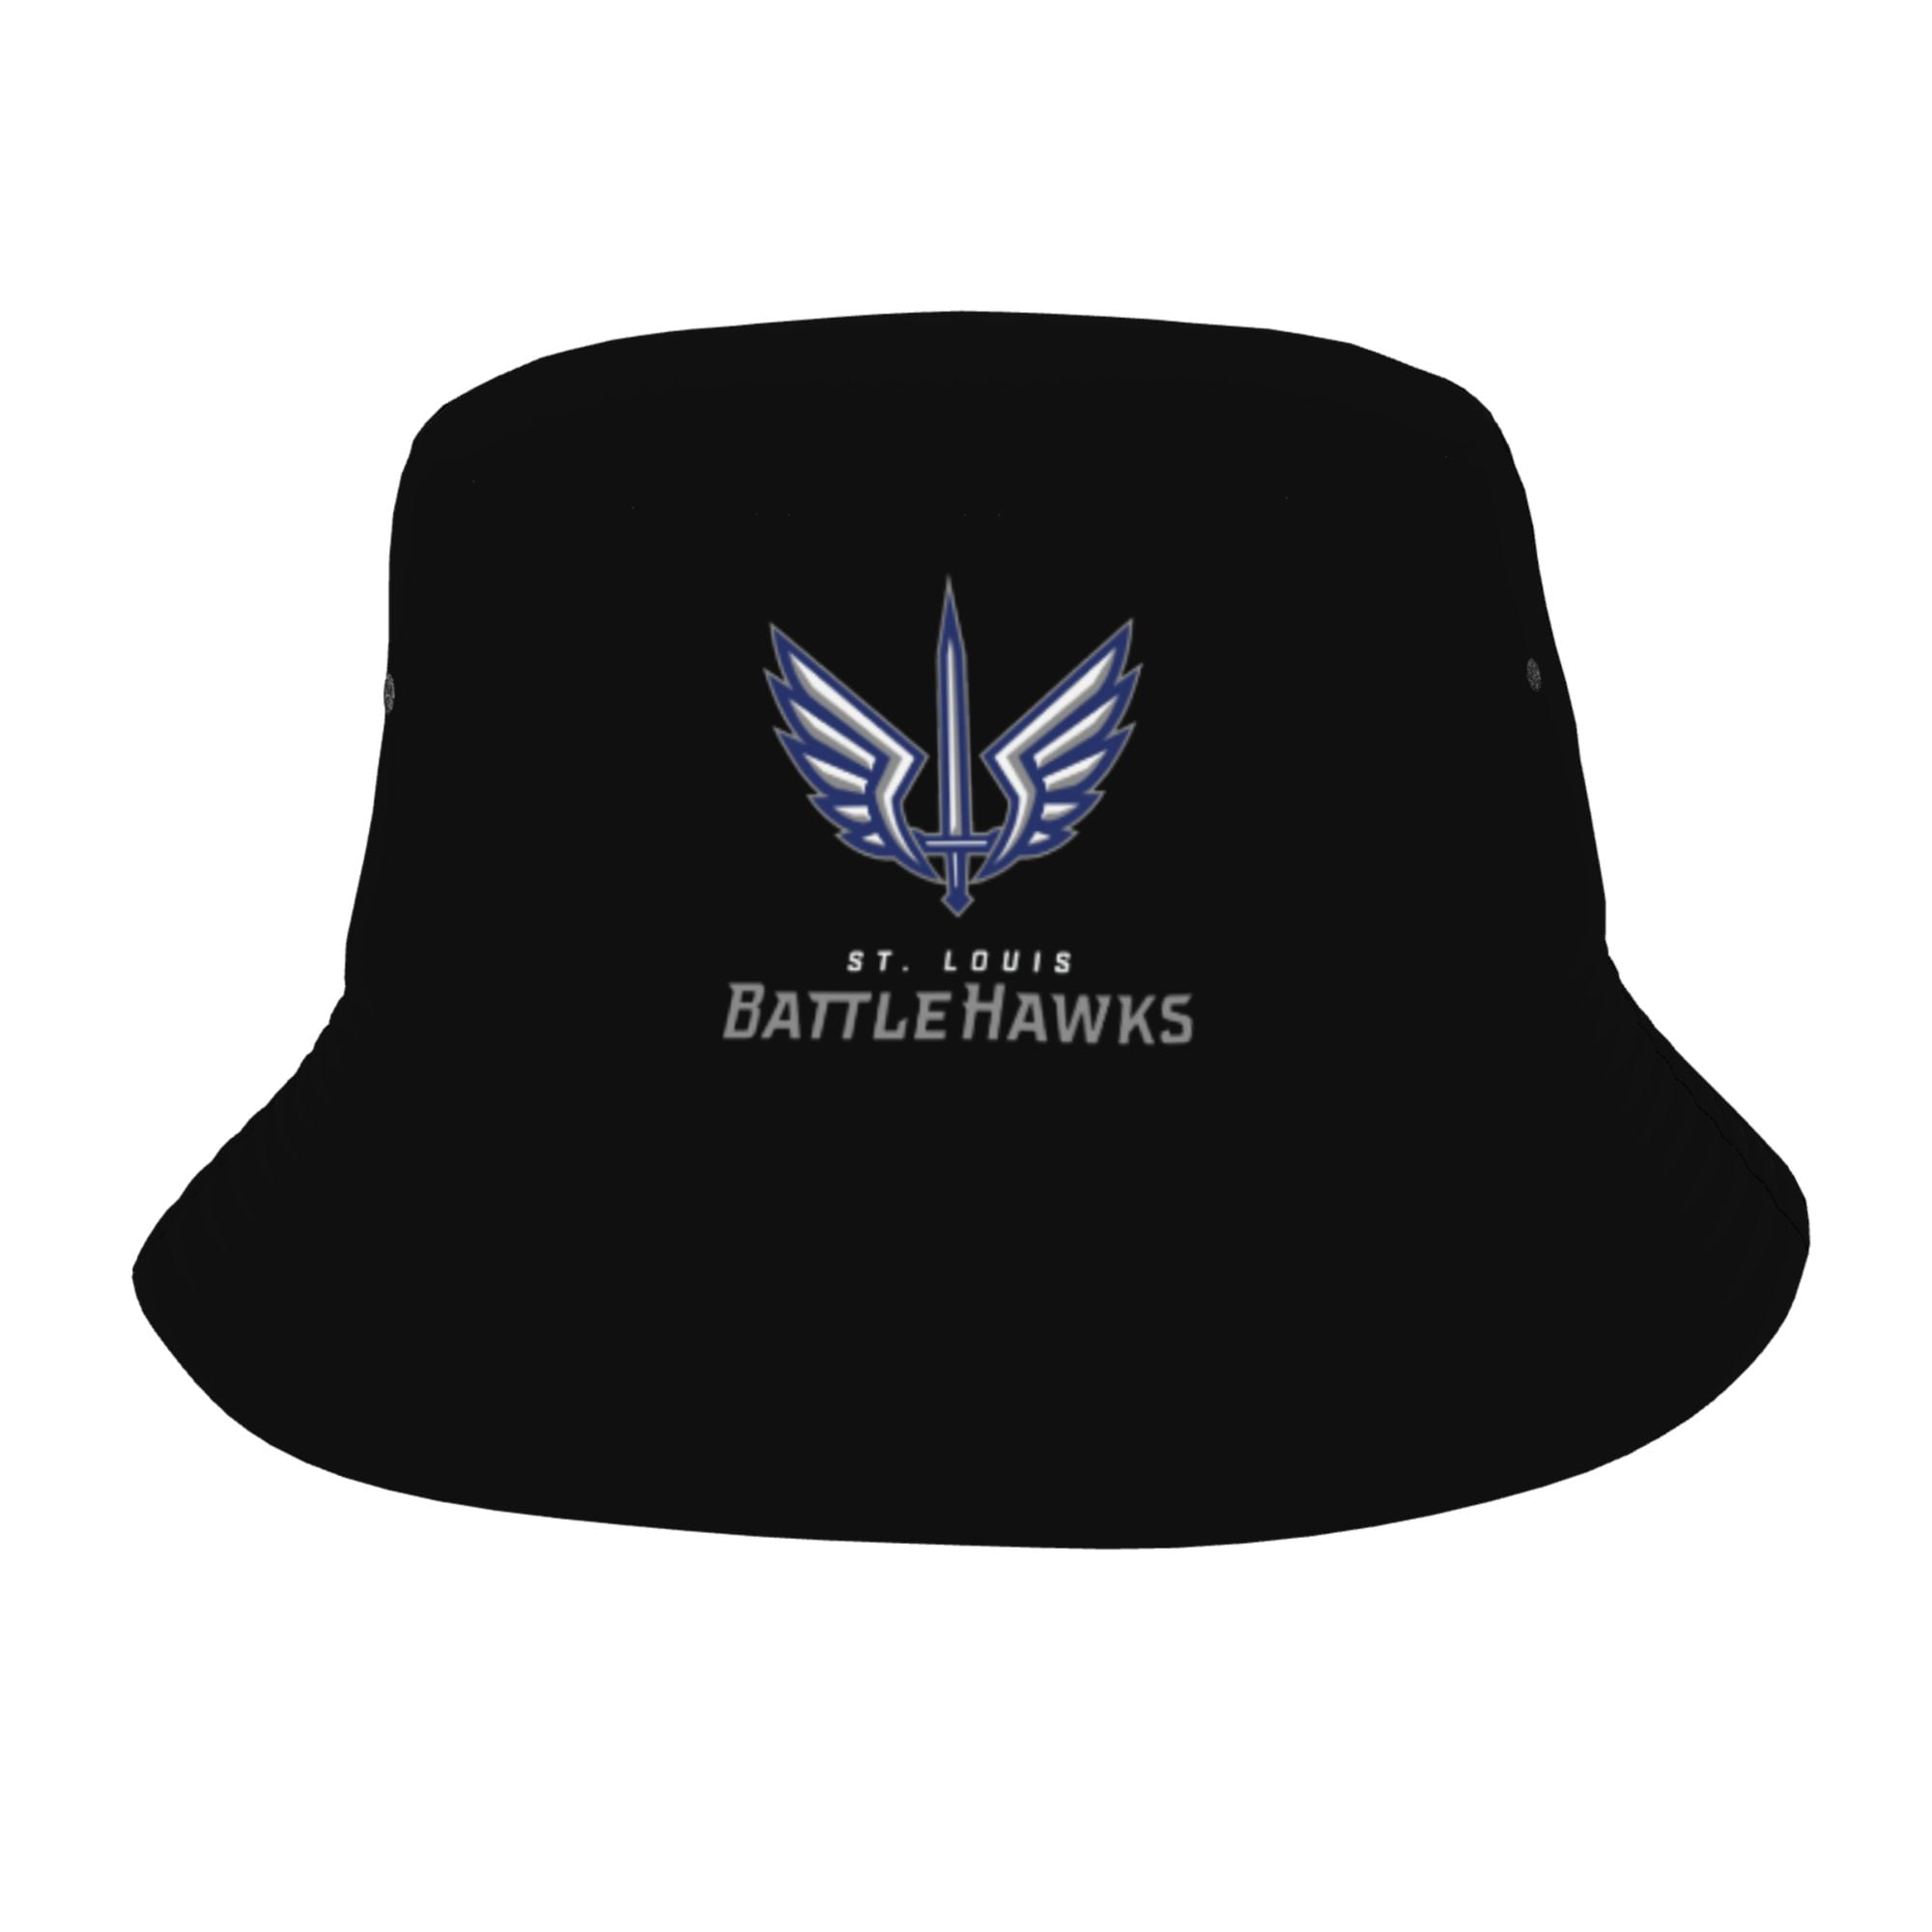 St. Louis BattleHawks Bucket Hat Black One Size Adjustable Snapback Hat 